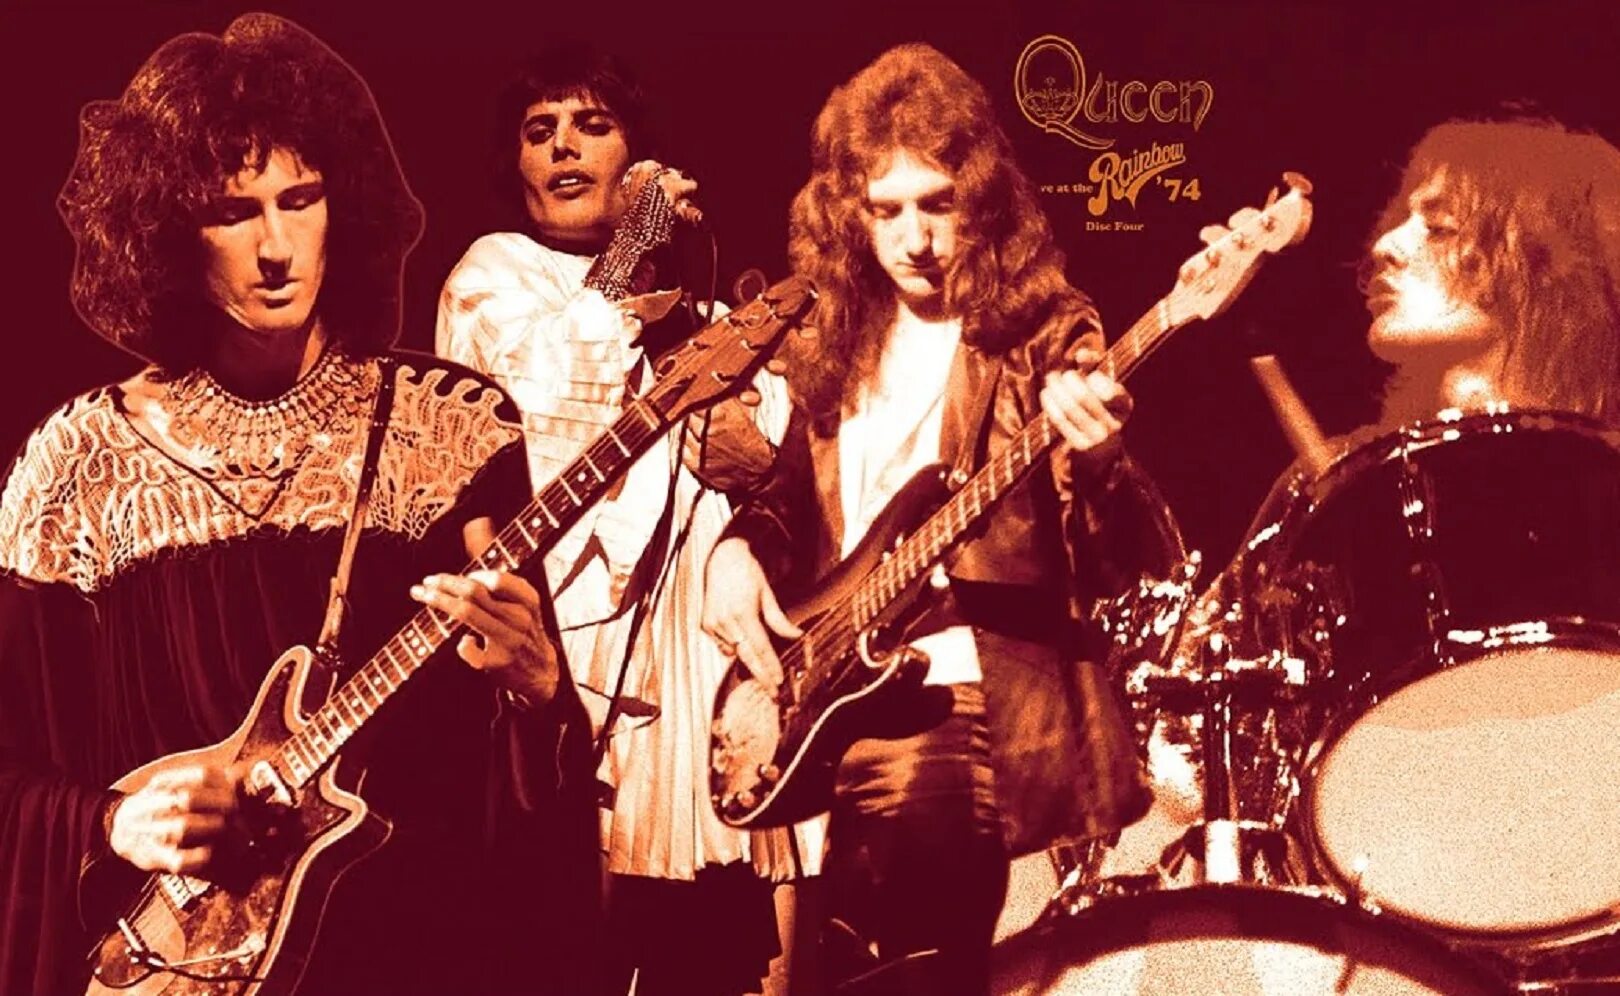 Queen band. Квин 1974. Группа Queen 1974. Queen Rainbow 1974 концерт.